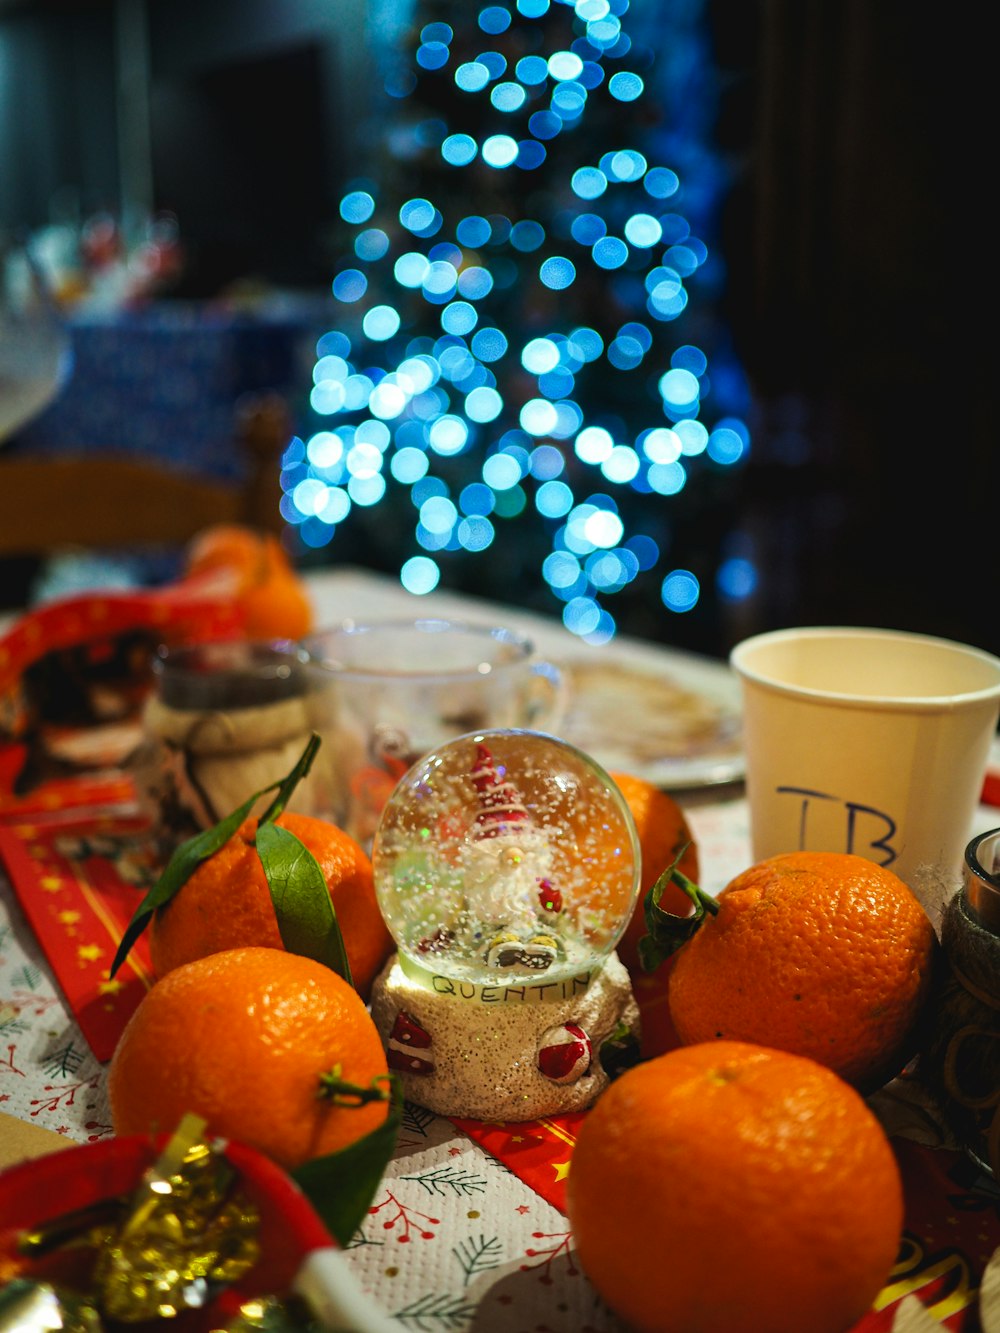 Fruta naranja junto a taza de cerámica blanca